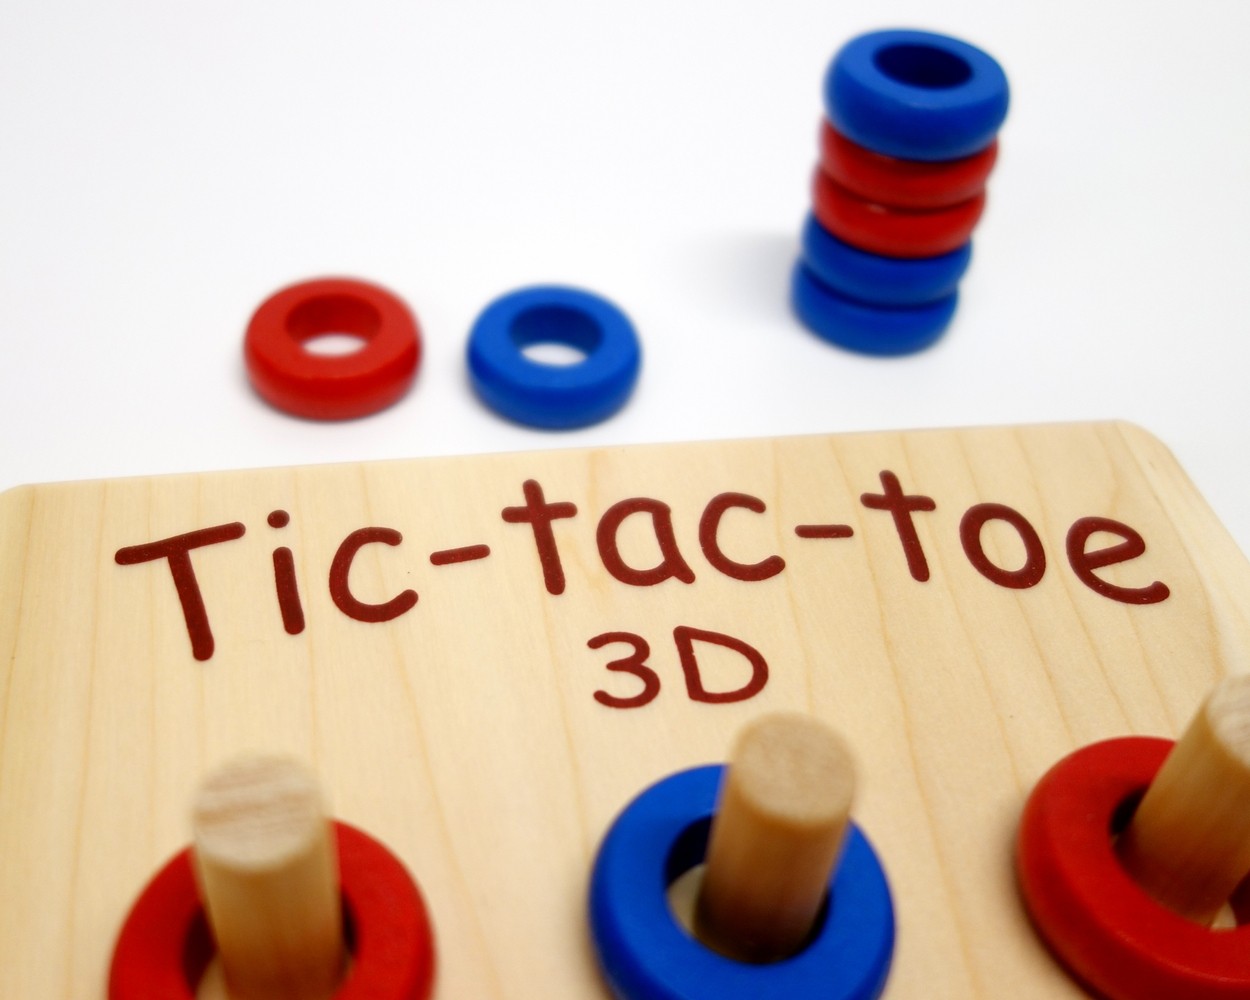 Le Tic-tac-toe 3D